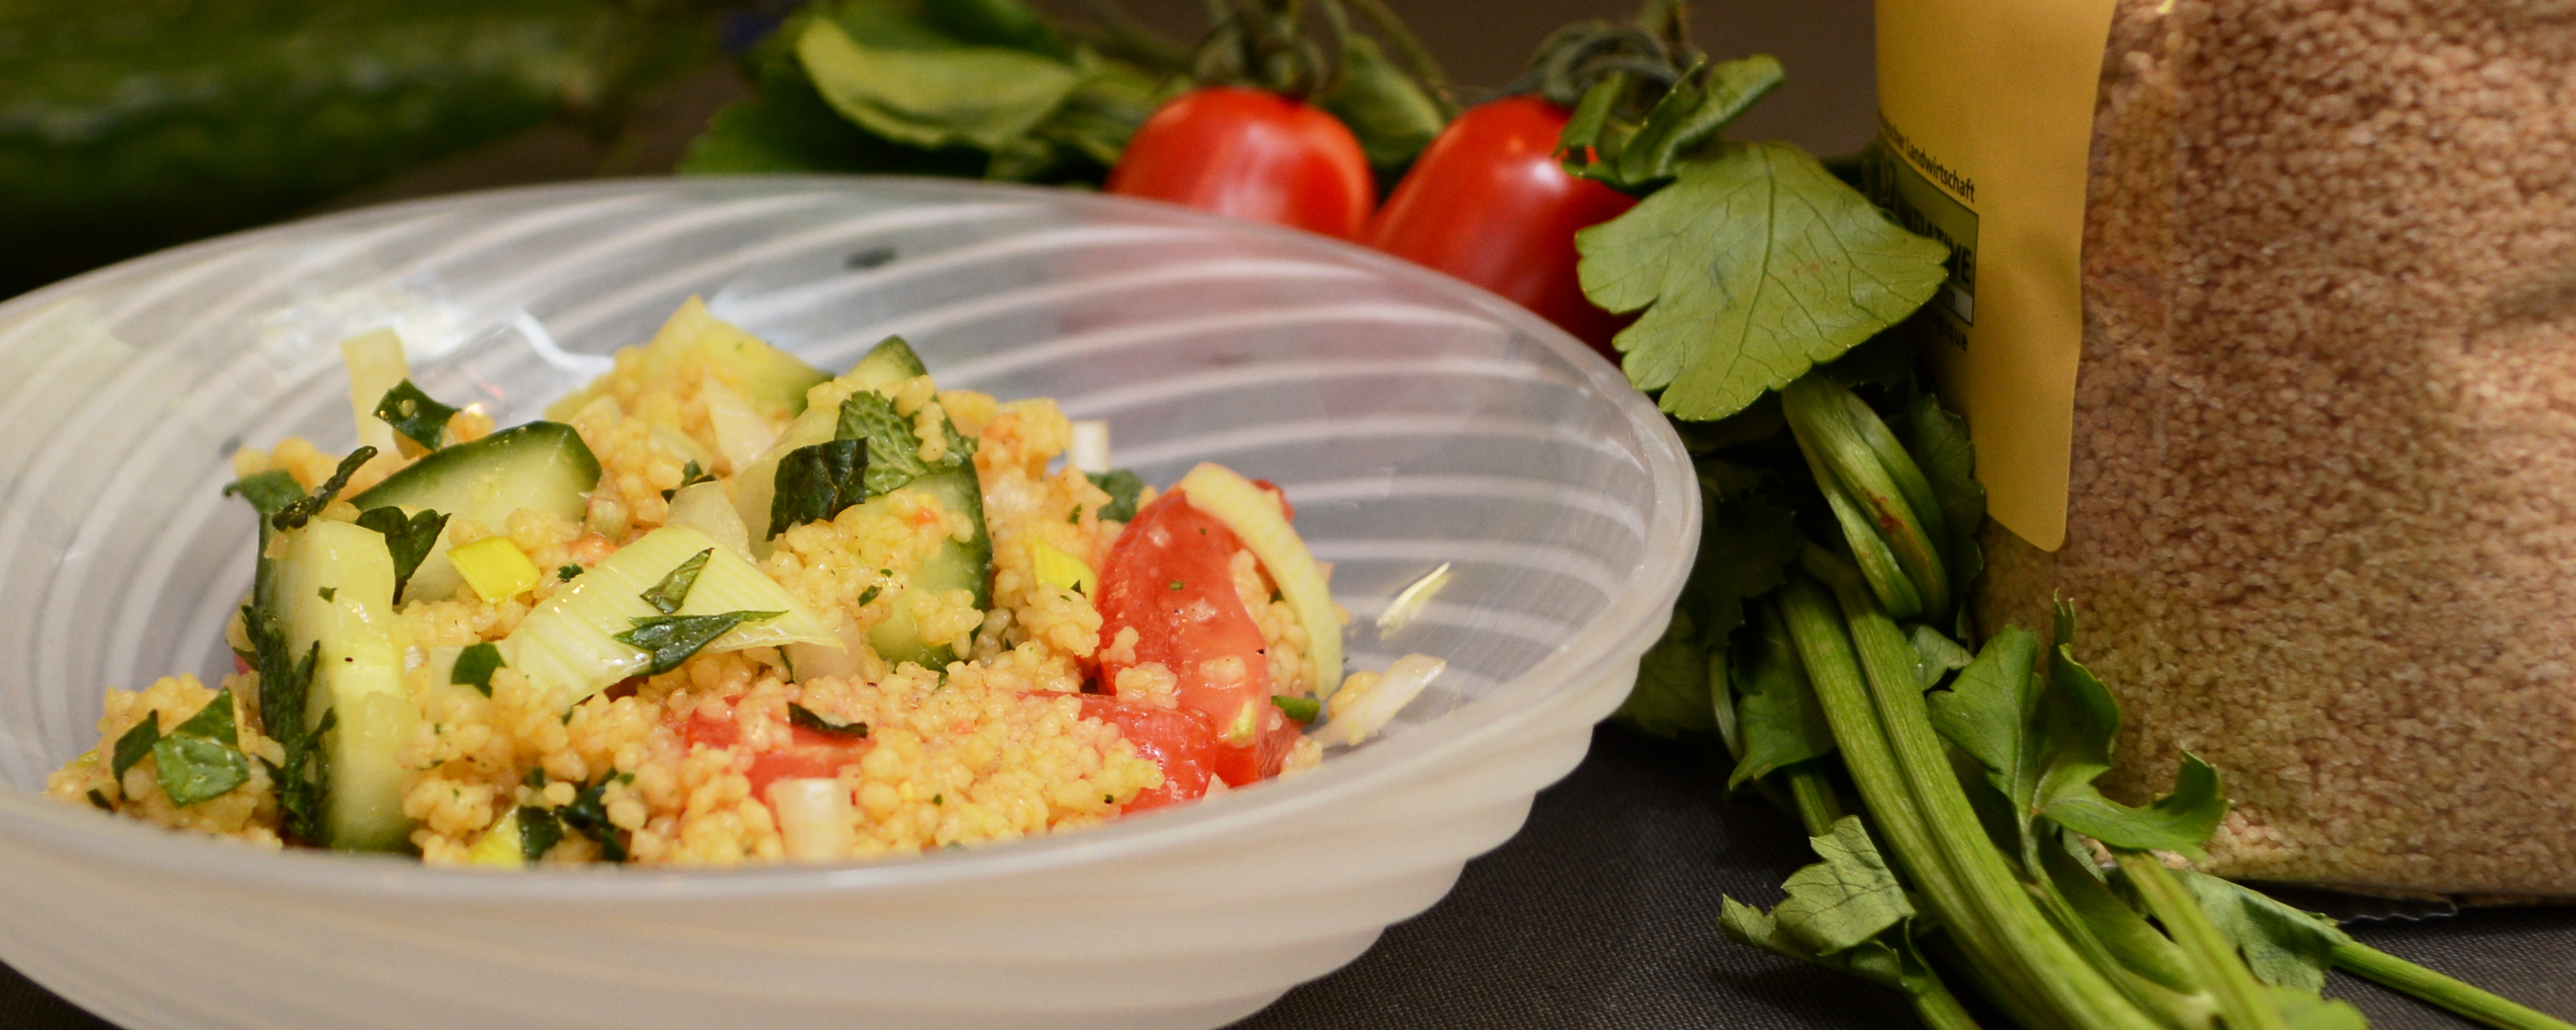 Couscous-Salat | Veganesk